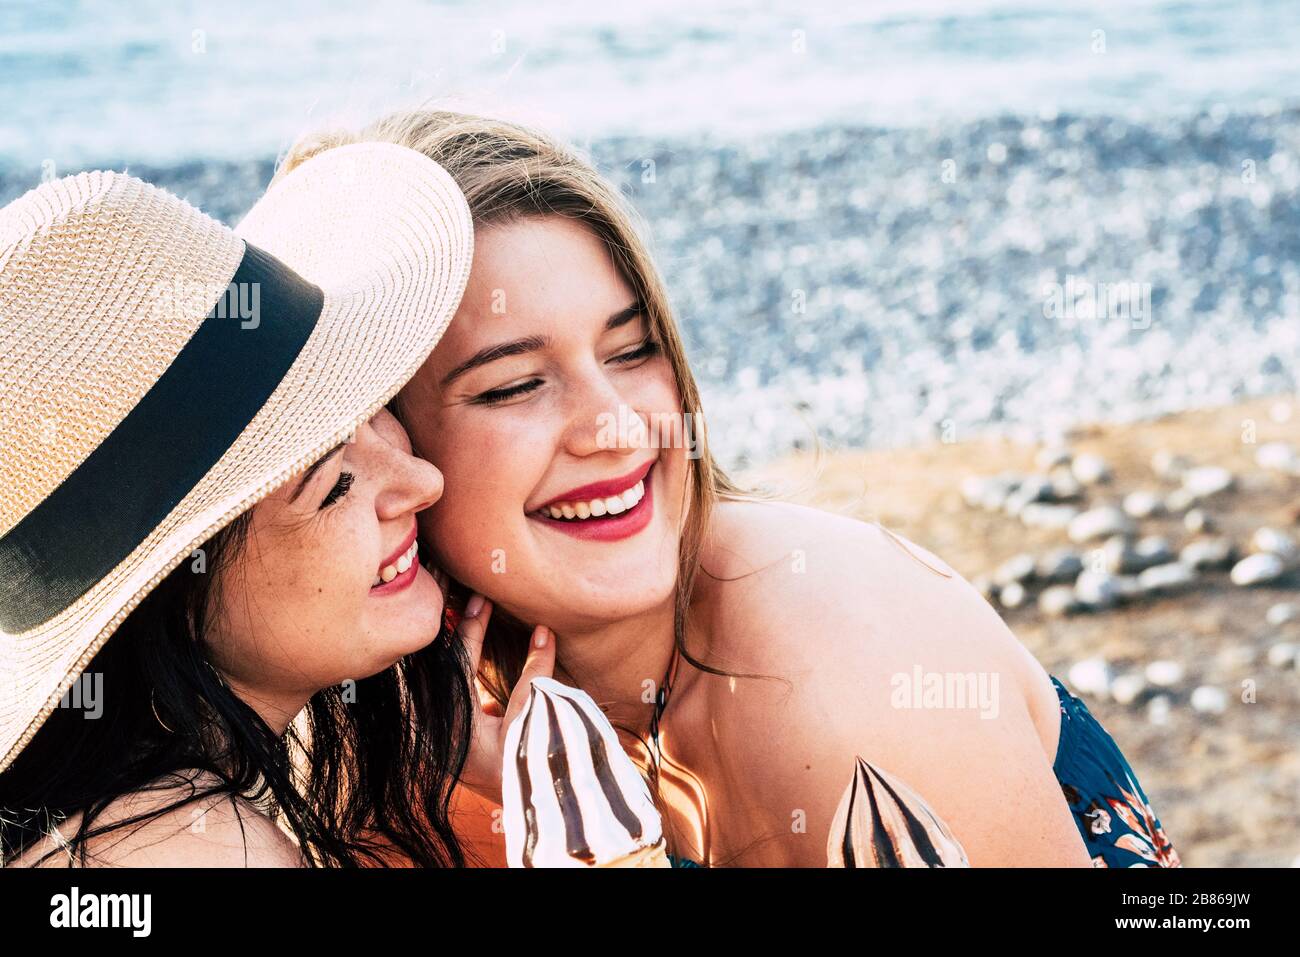 Ein paar junge kaukasische Frauen Freunde bleiben in der Freizeit im Freien mit Eis zusammen - Konzept von Sommermenschen, die Freundschaft und Alt genießen Stockfoto